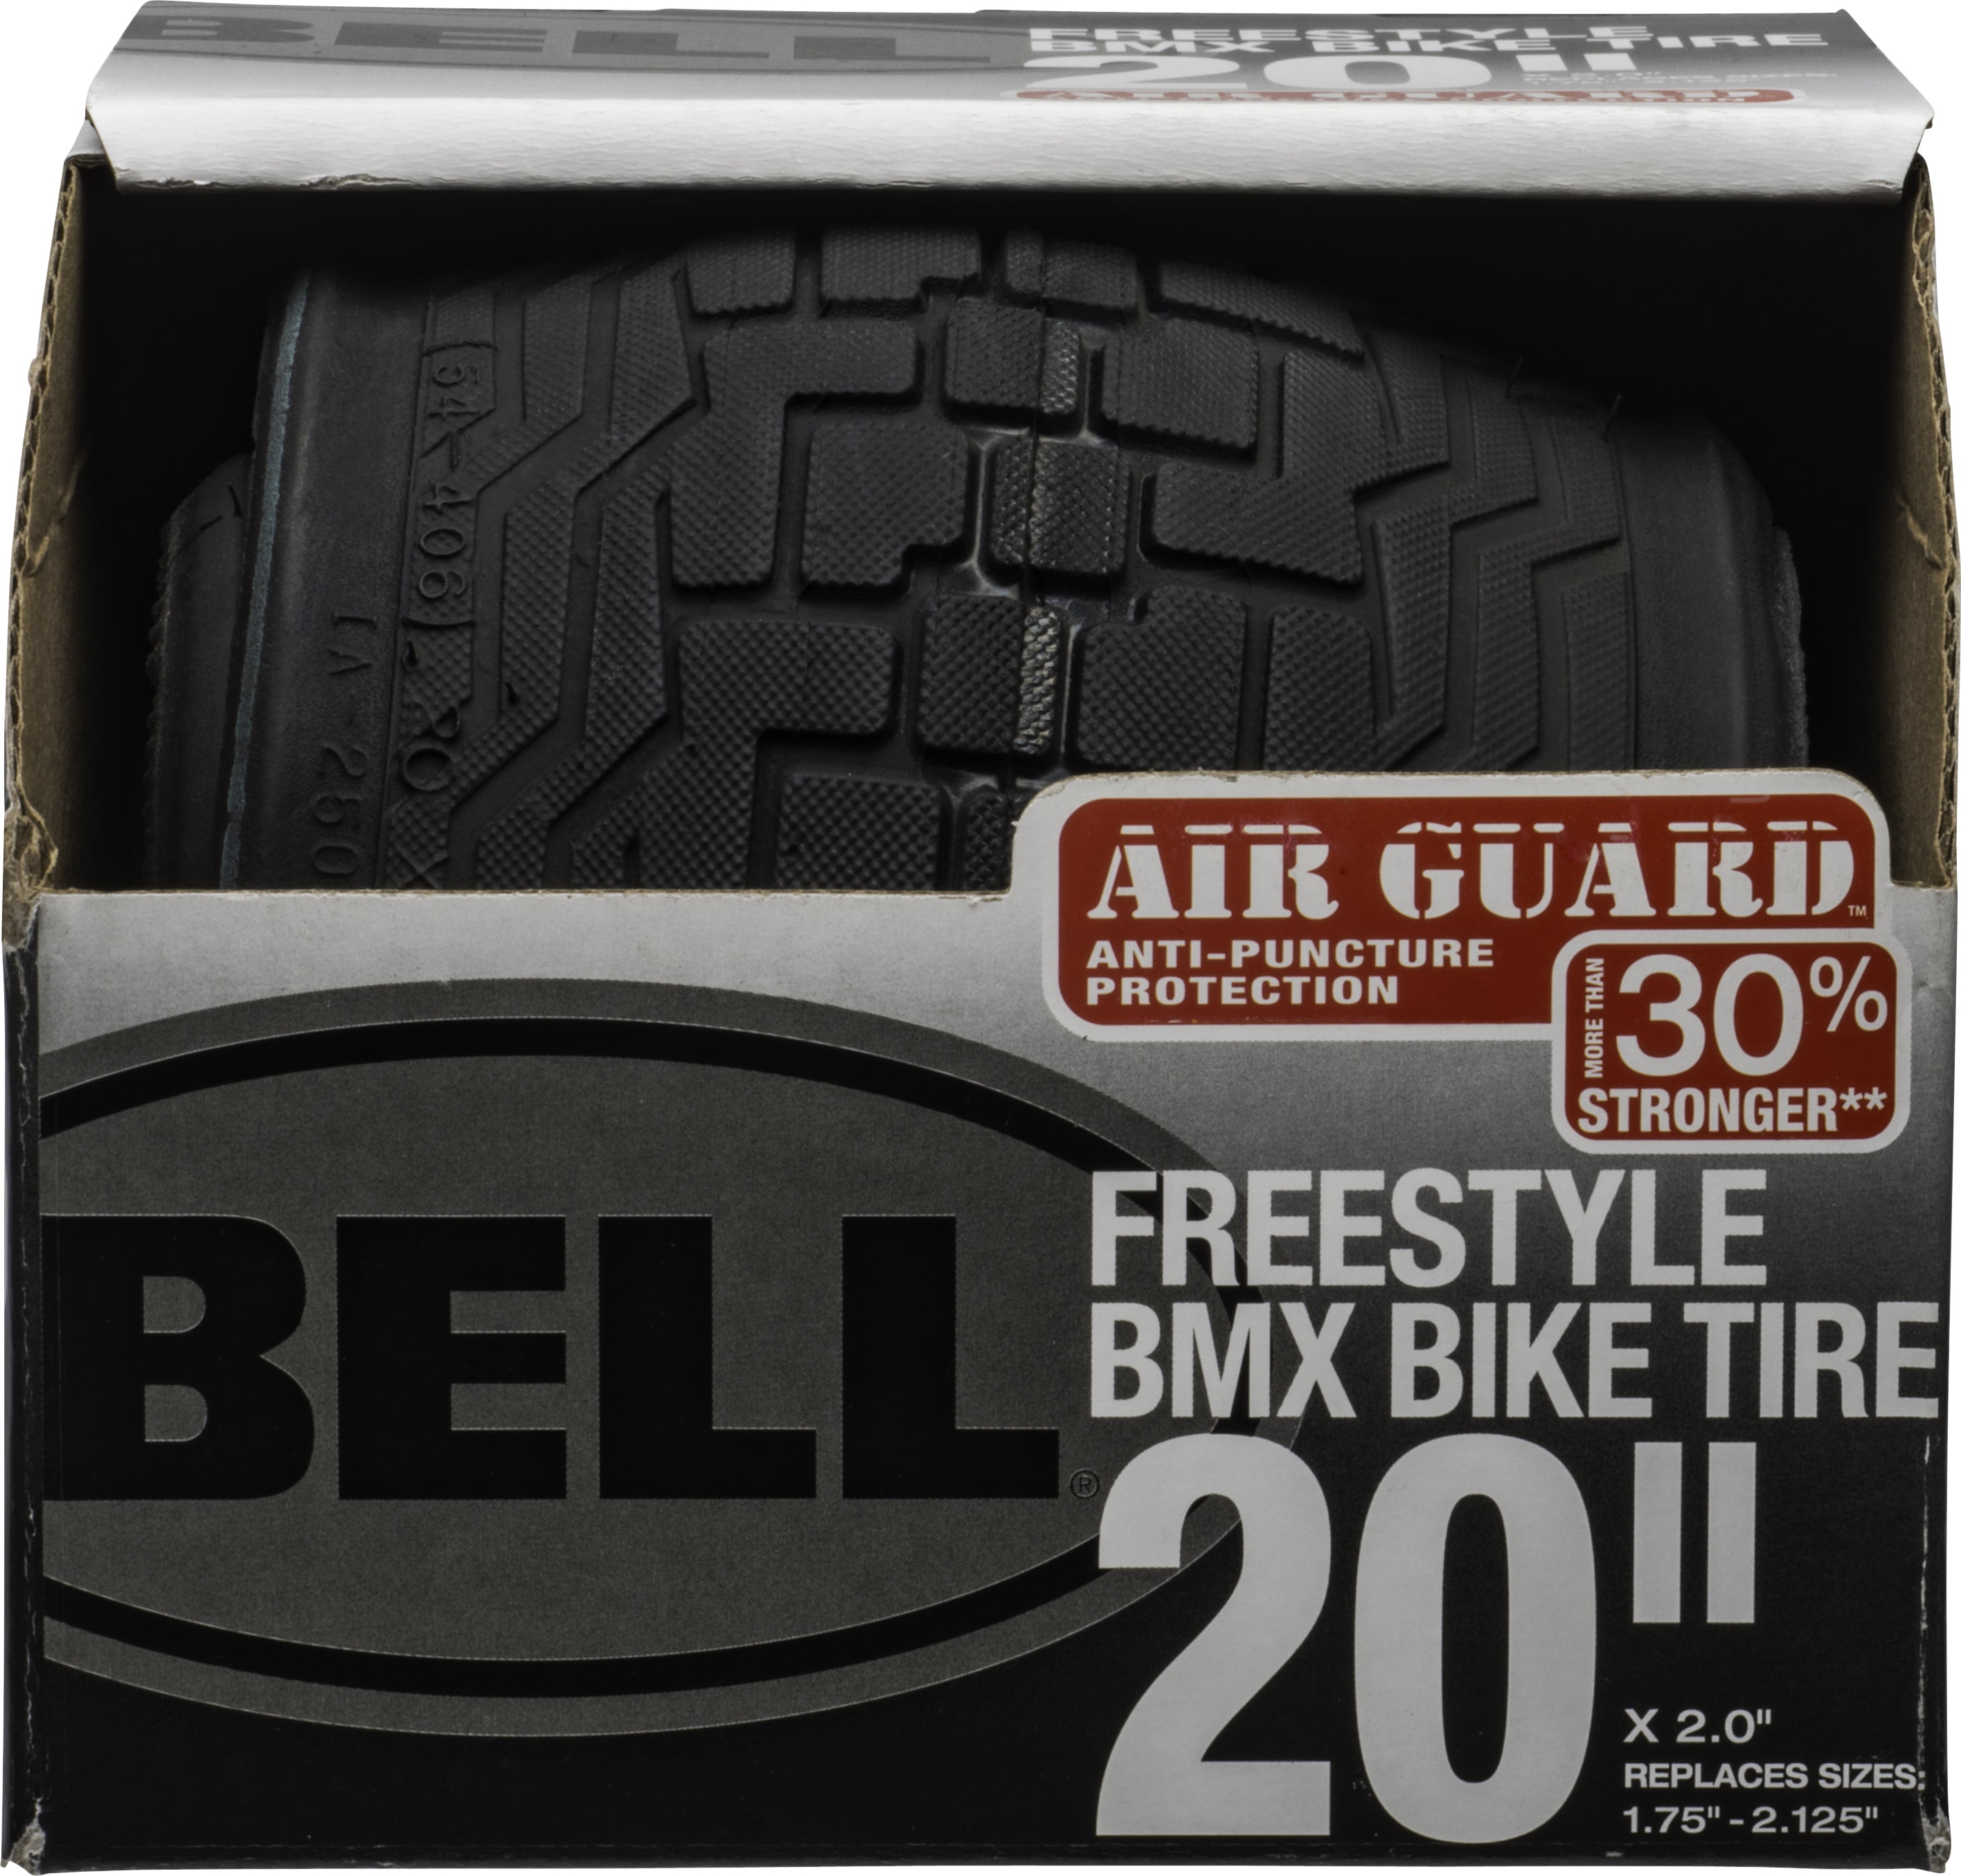 Bell Air Guard Freestyle BMX Bike Tire 